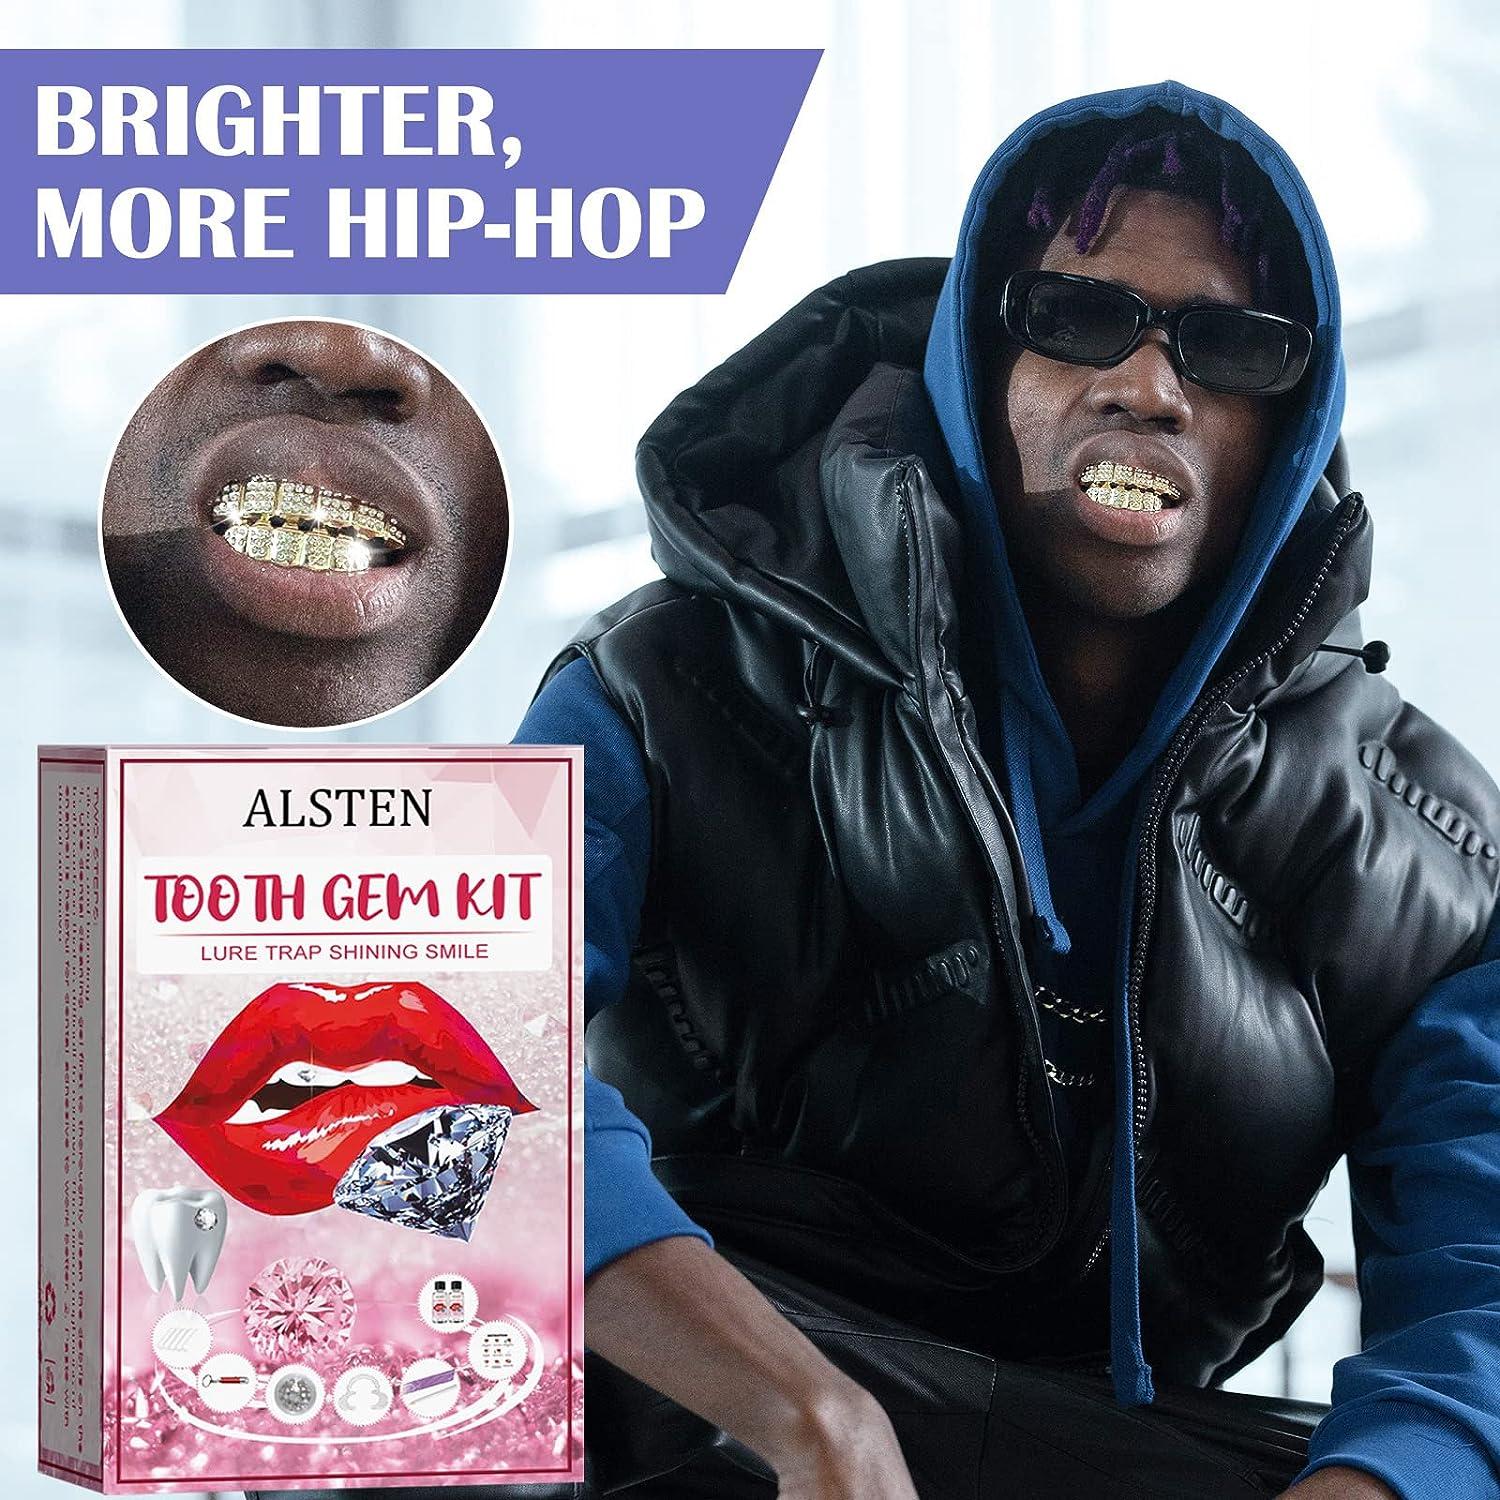 Tooth Gem Kits